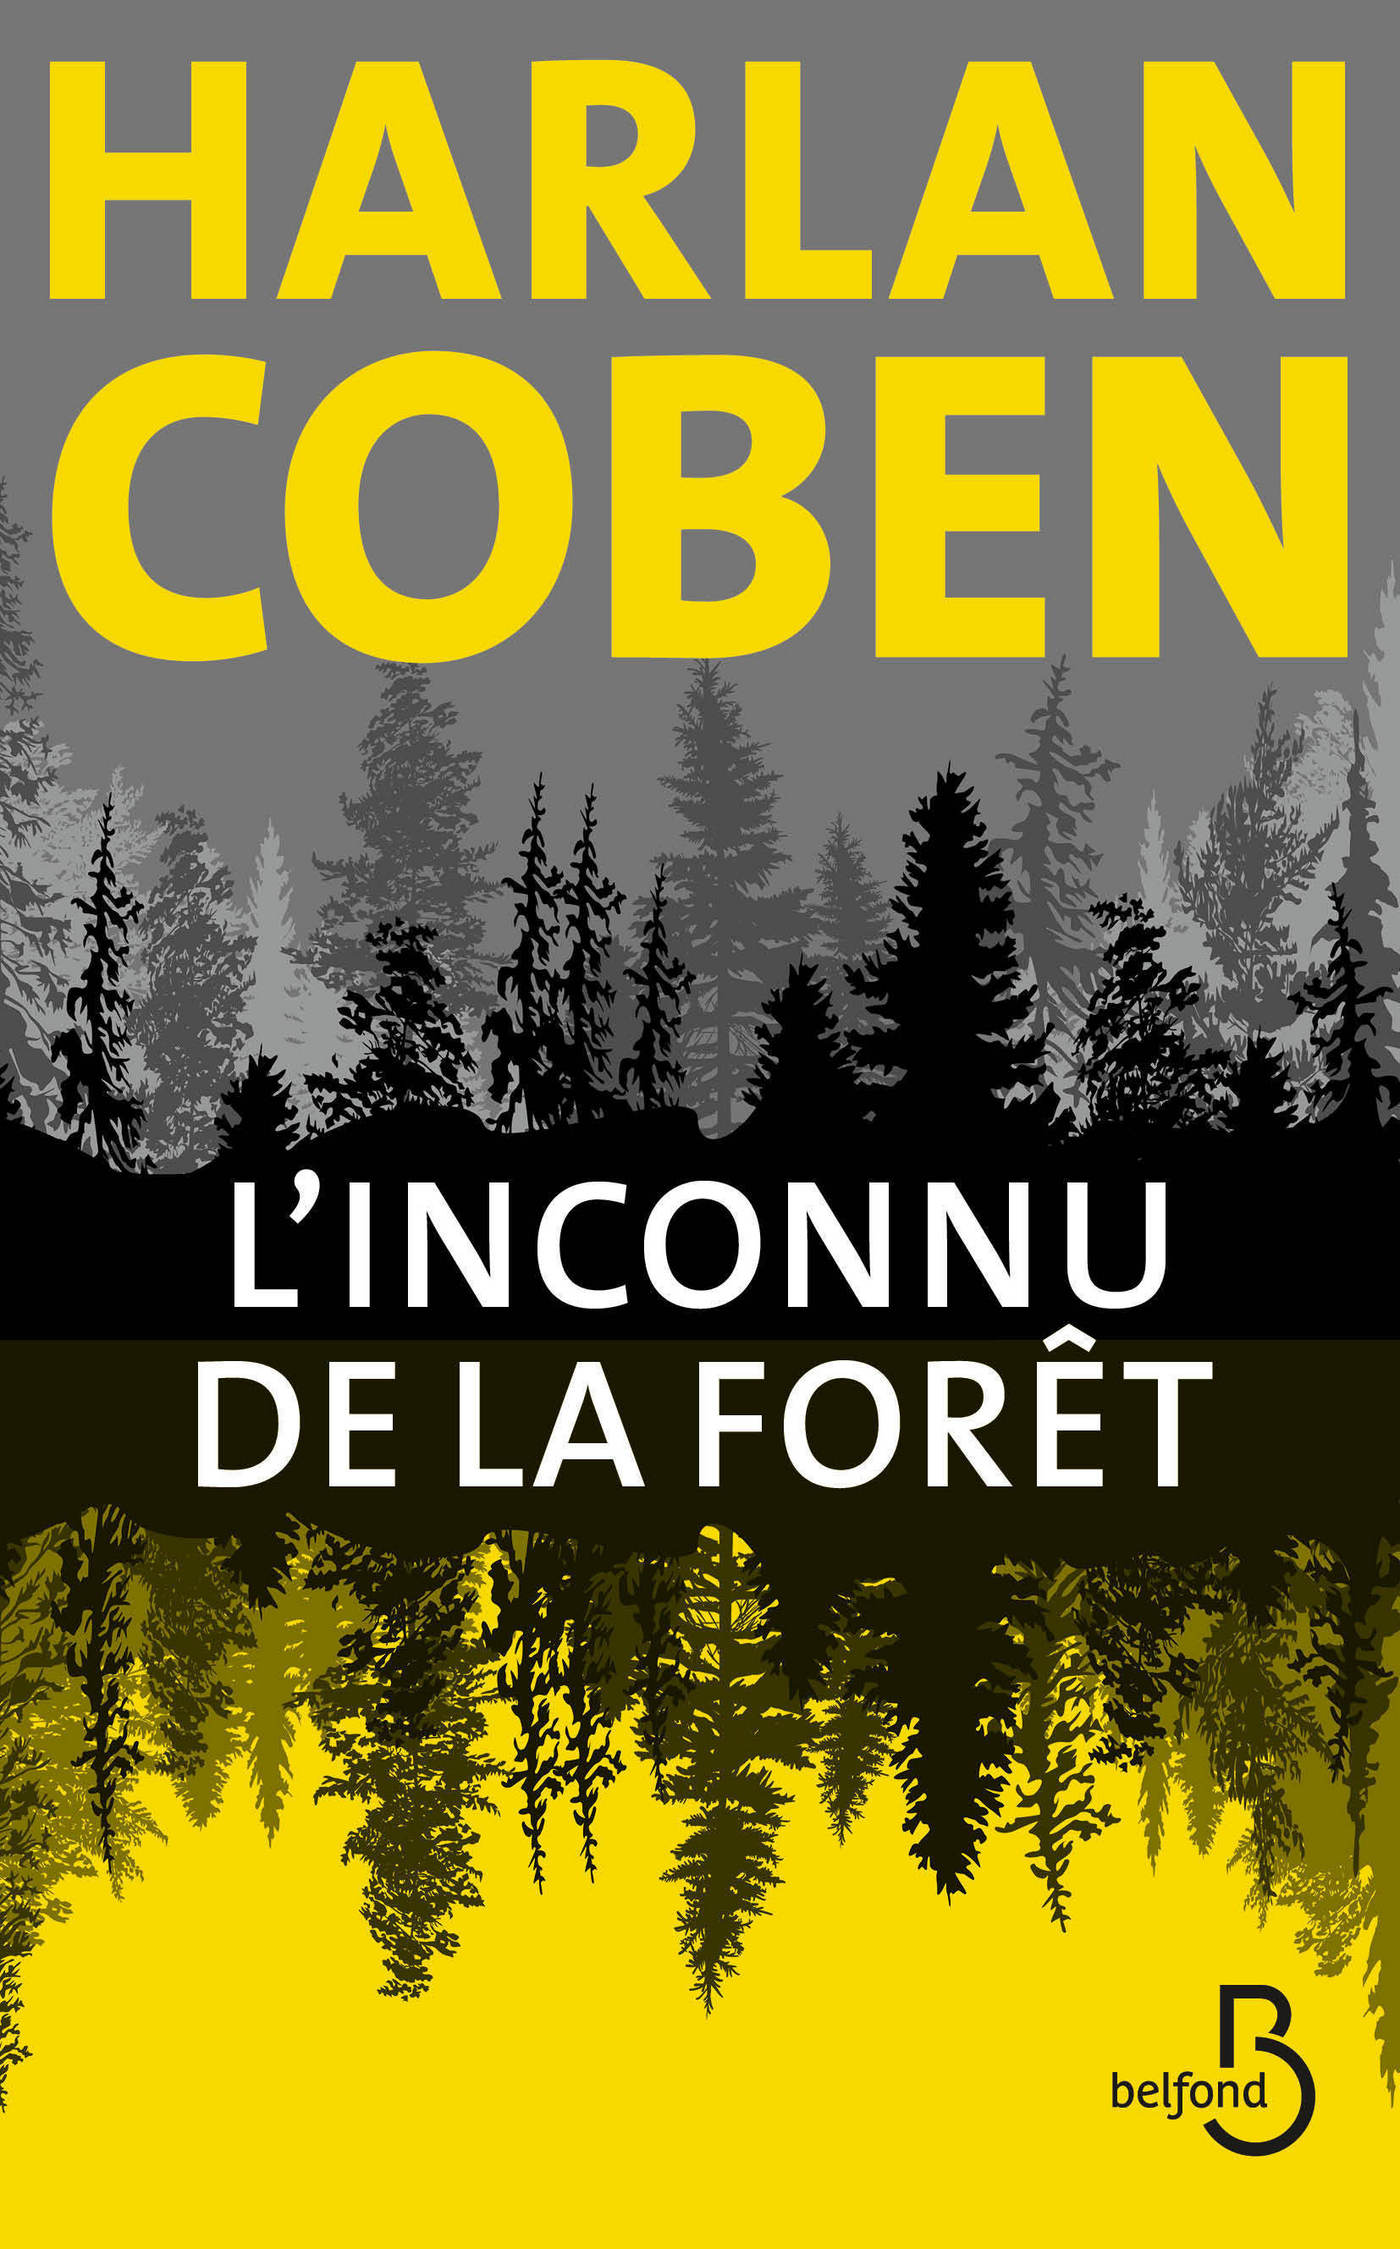 Afficher "L'Inconnu de la forêt"